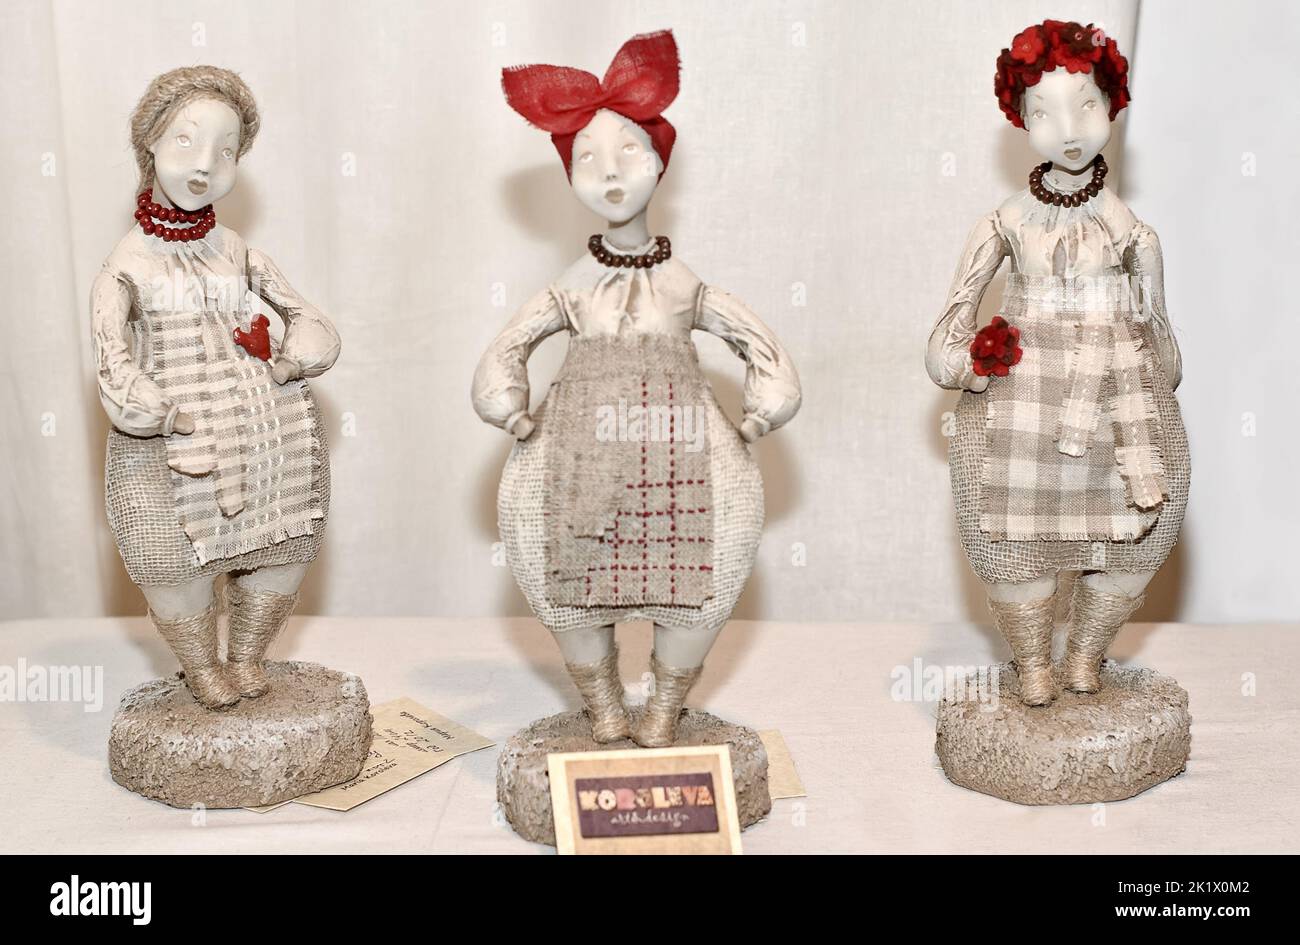 Une série de poupées folkloriques ukrainiennes à collectionner exposées à l'exposition Fashion Doll International à Kiev, en Ukraine. Banque D'Images